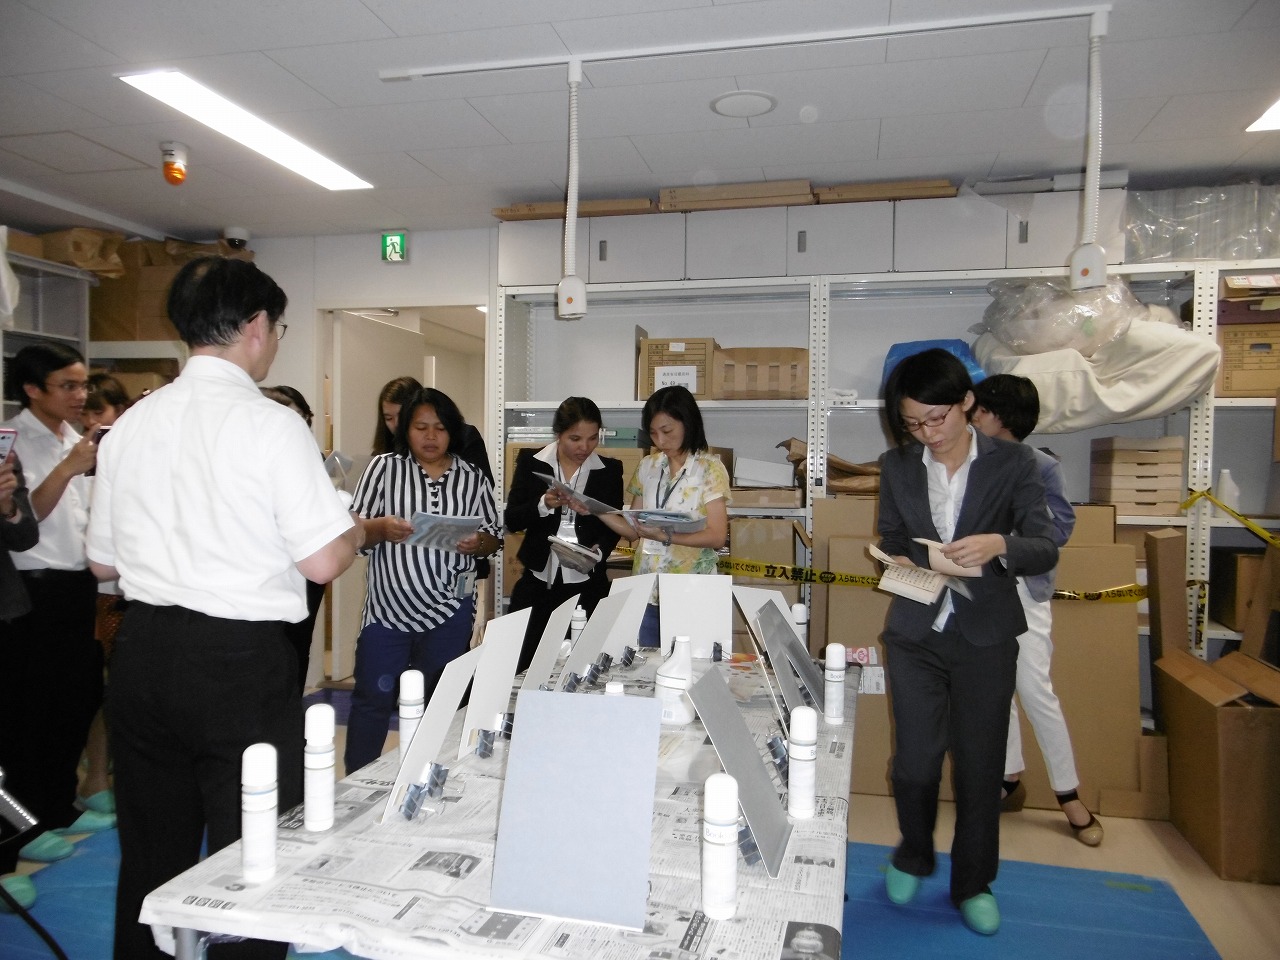 東京大学経済学部資料室にて、小島浩之講師およびPreservation Technology Japan社による史資料修復・保存の講義・実務研修を受ける3